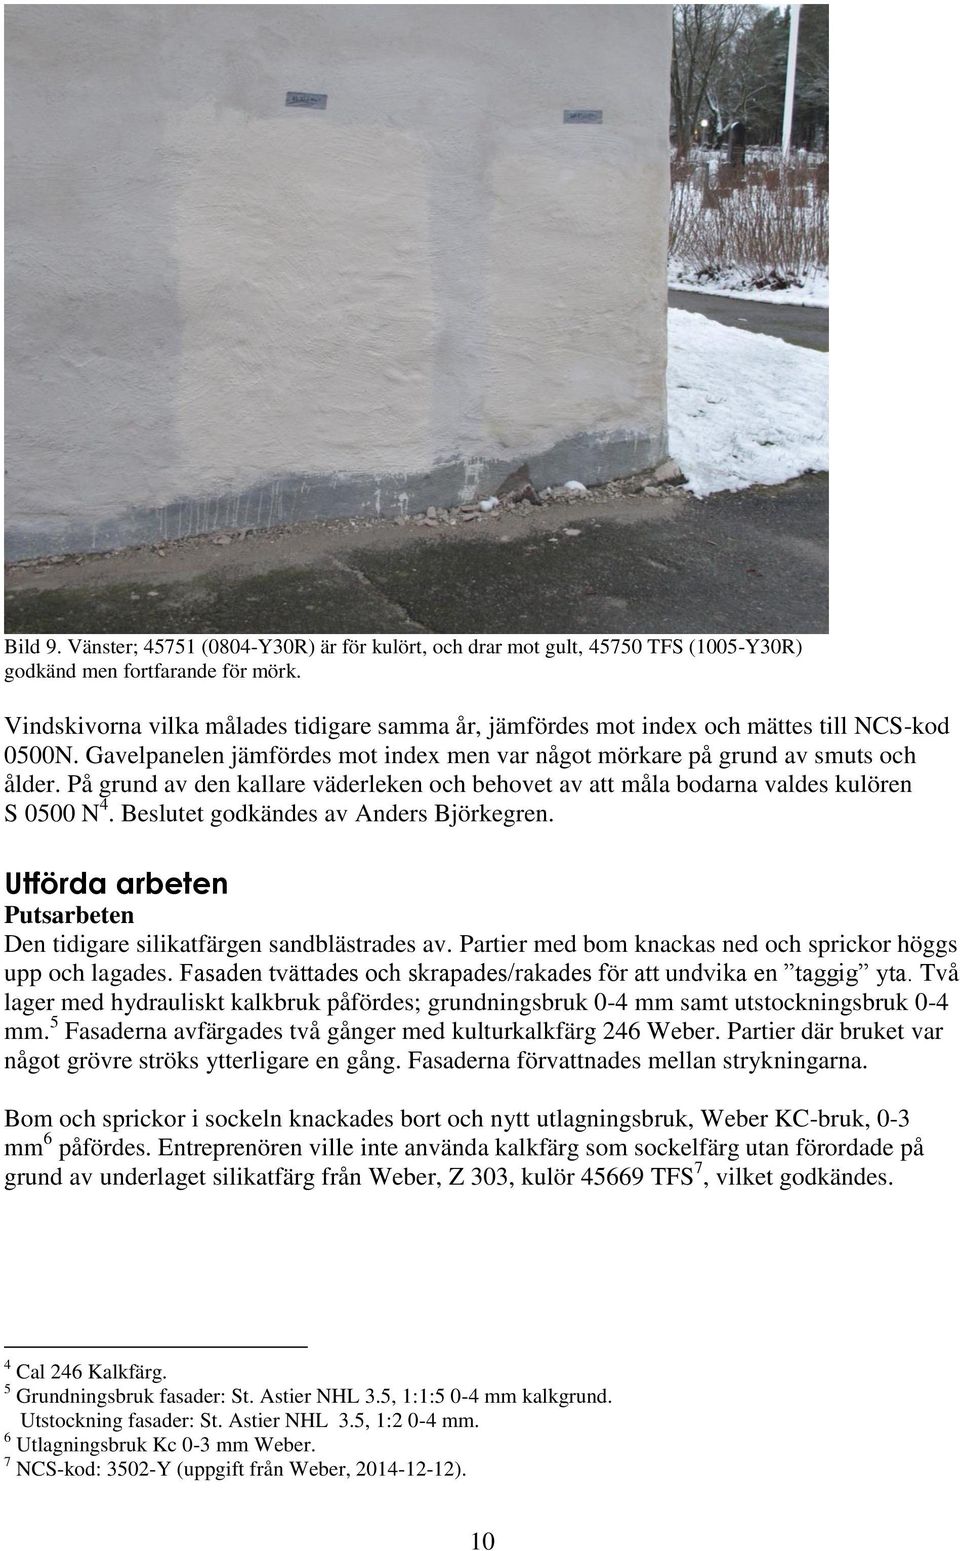 På grund av den kallare väderleken och behovet av att måla bodarna valdes kulören S 0500 N 4. Beslutet godkändes av Anders Björkegren.